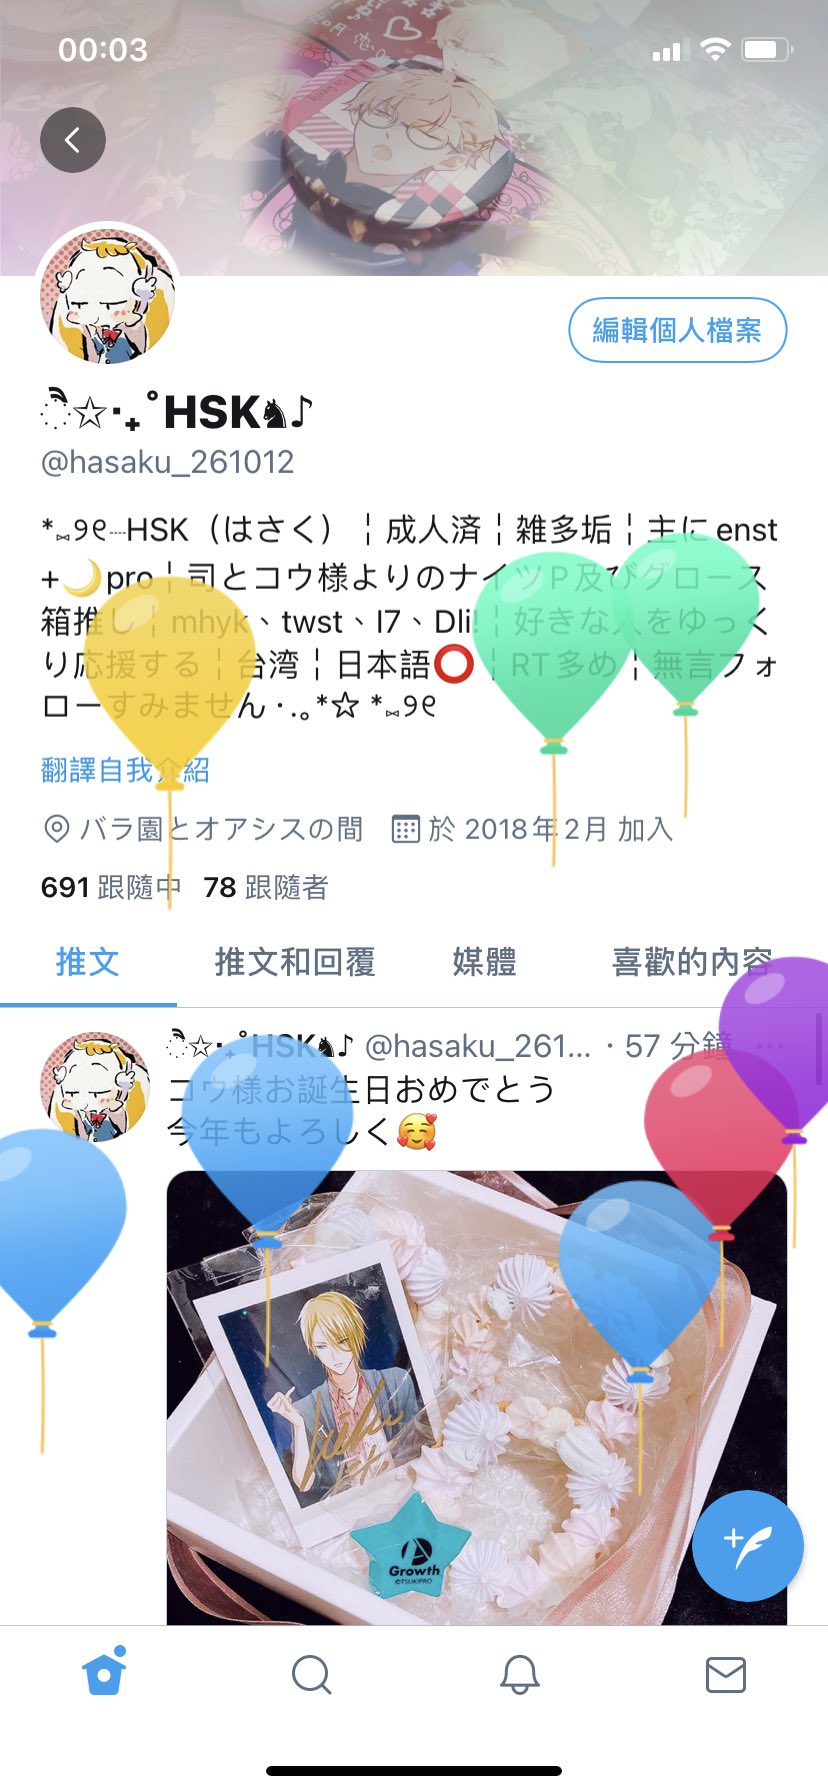 Hsk Hasaku Twitter